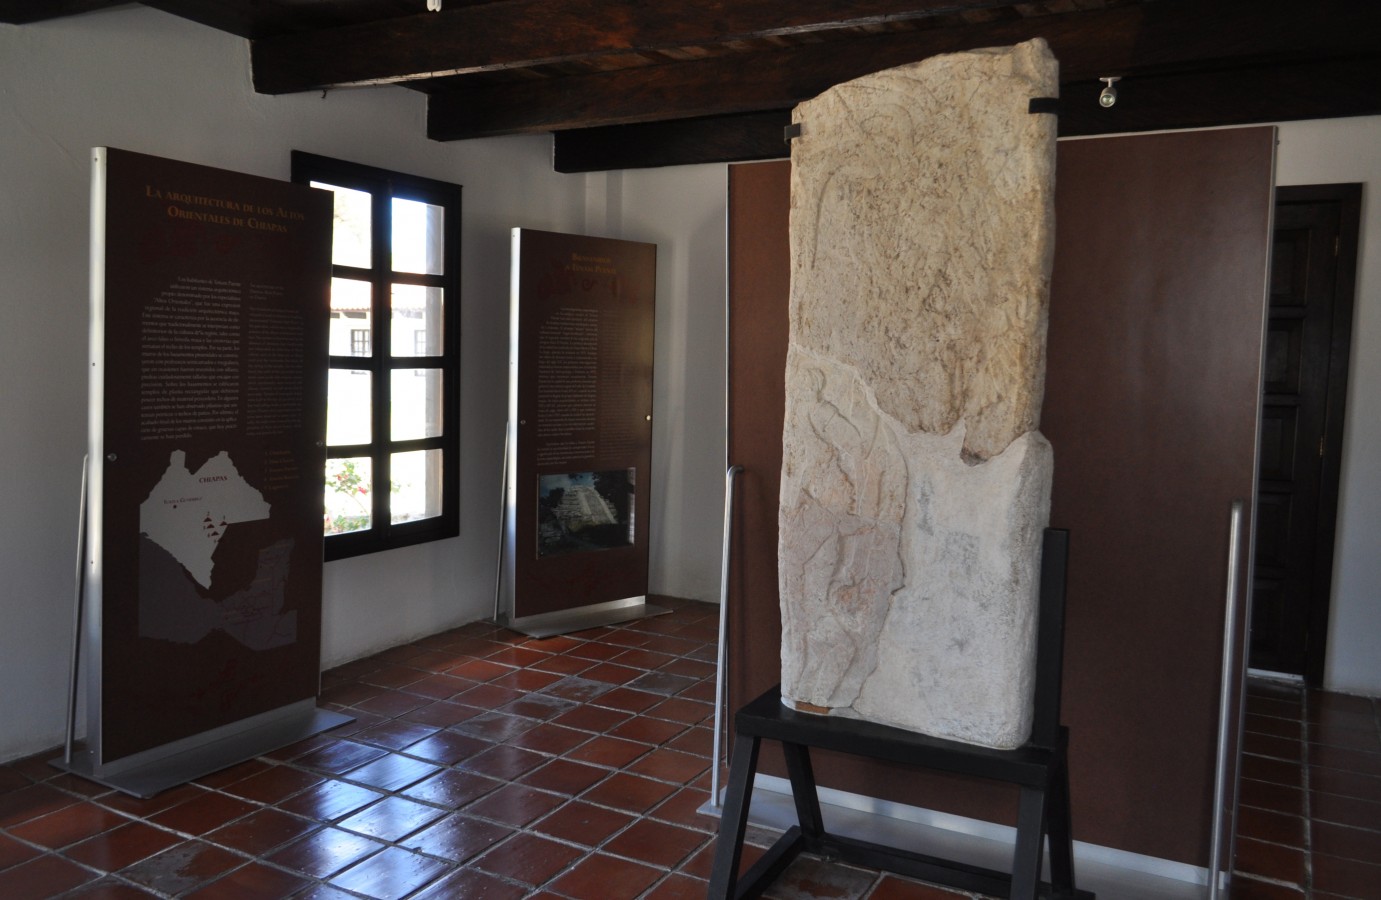 INAH-Museo y Zona Arqueológica de Tenam Puente y Chinkultic